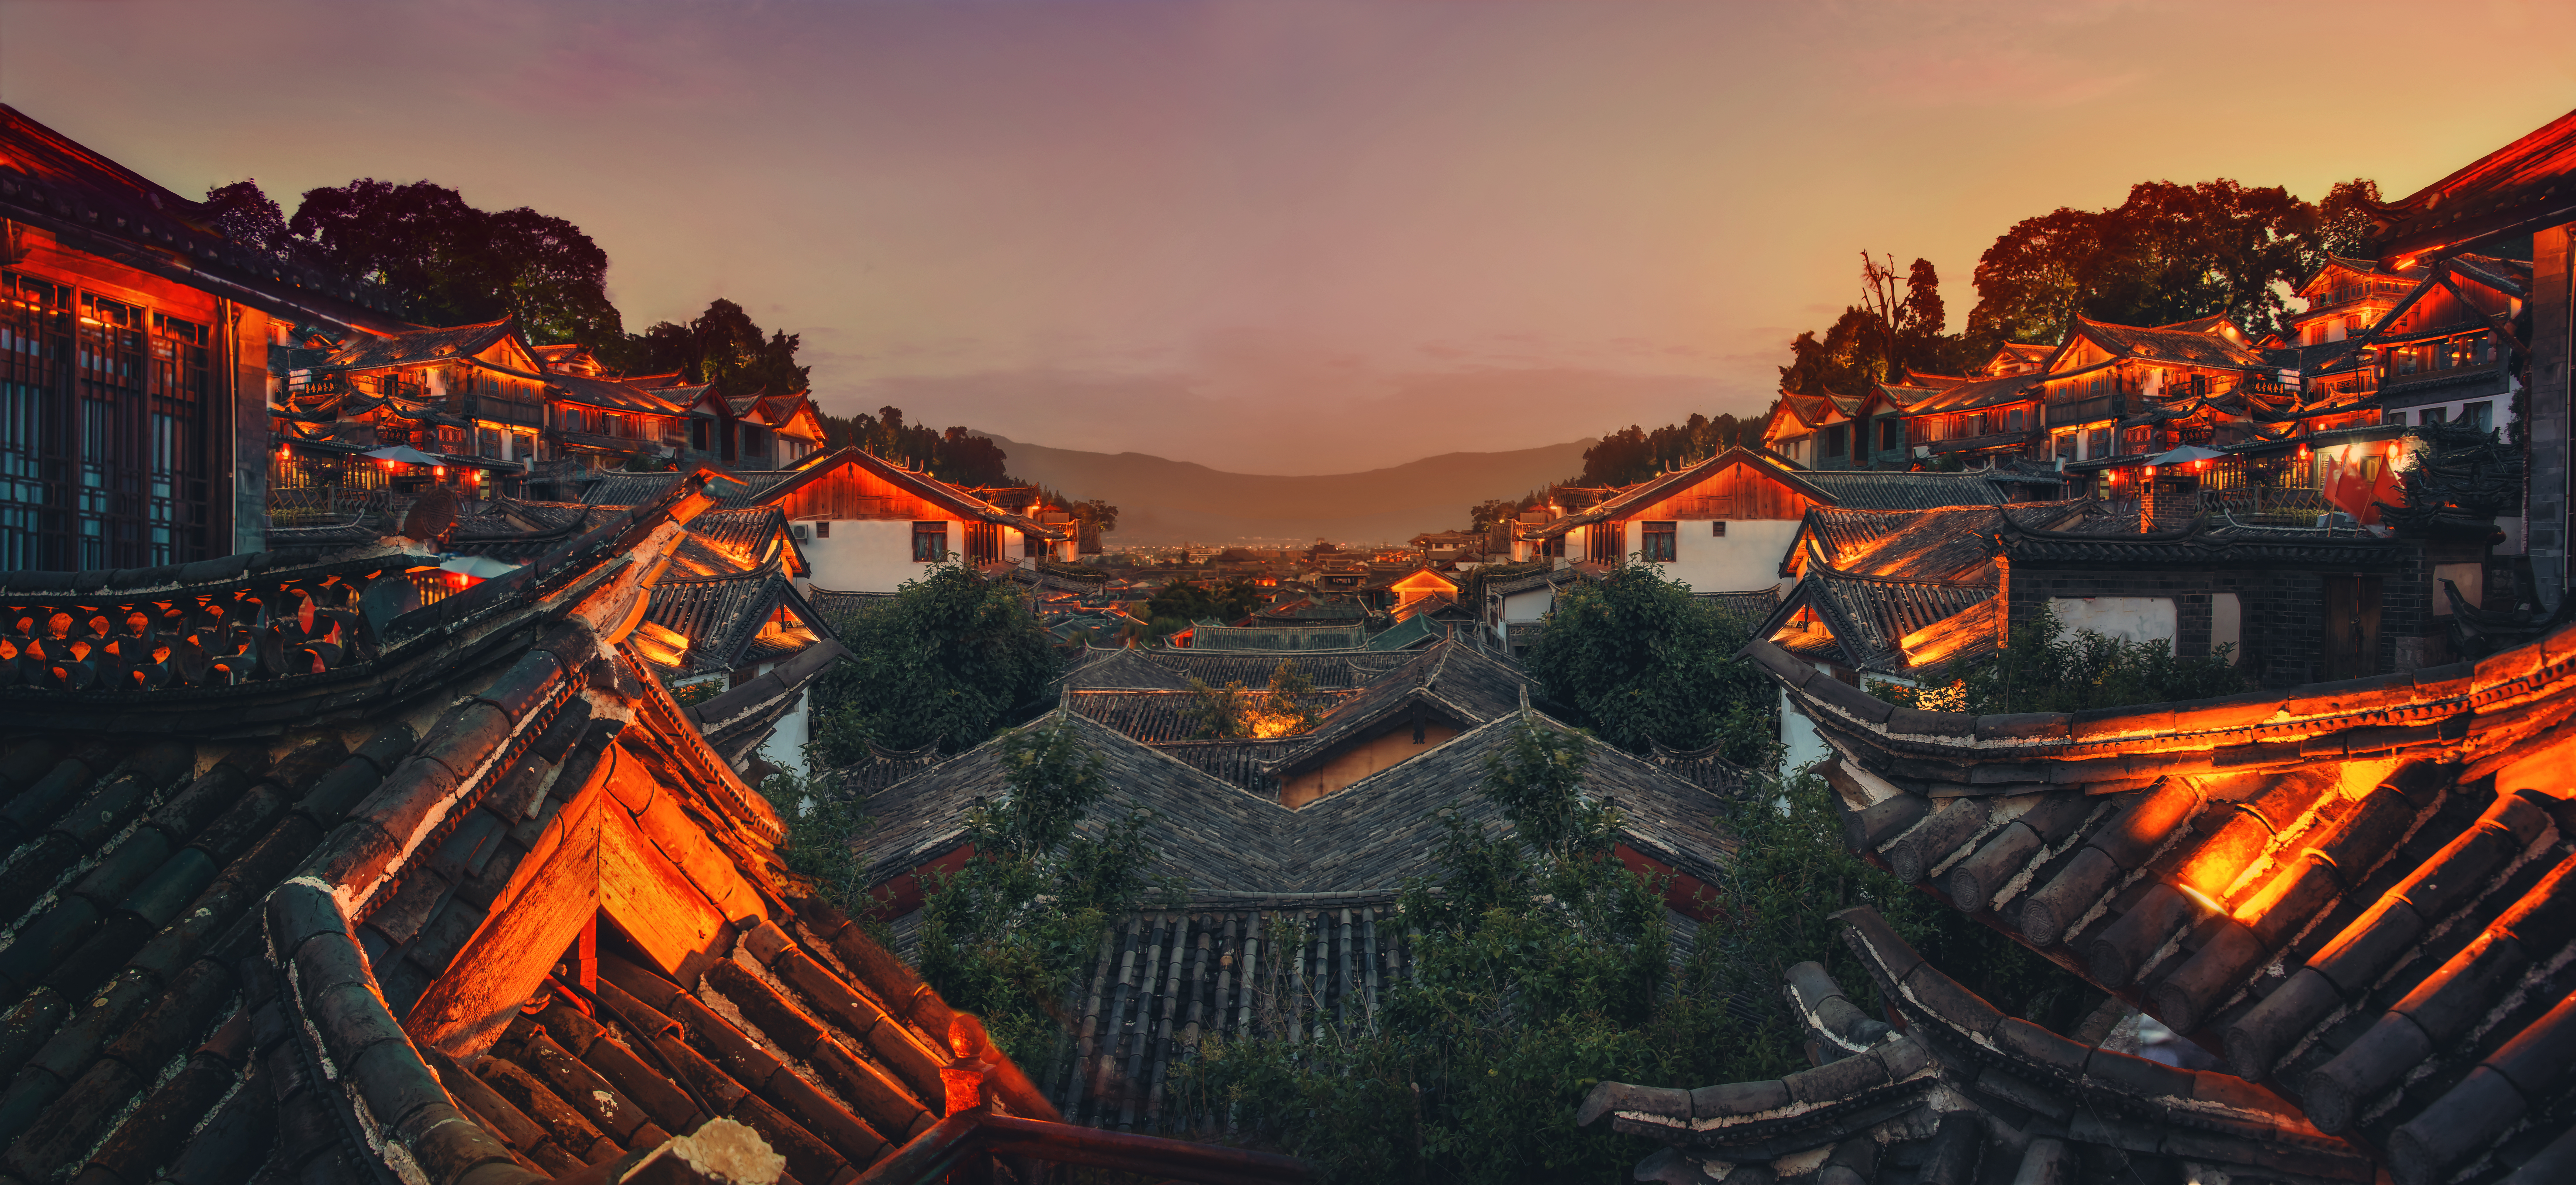 china, cities, man made, lijiang, night, roof, village, yunnan